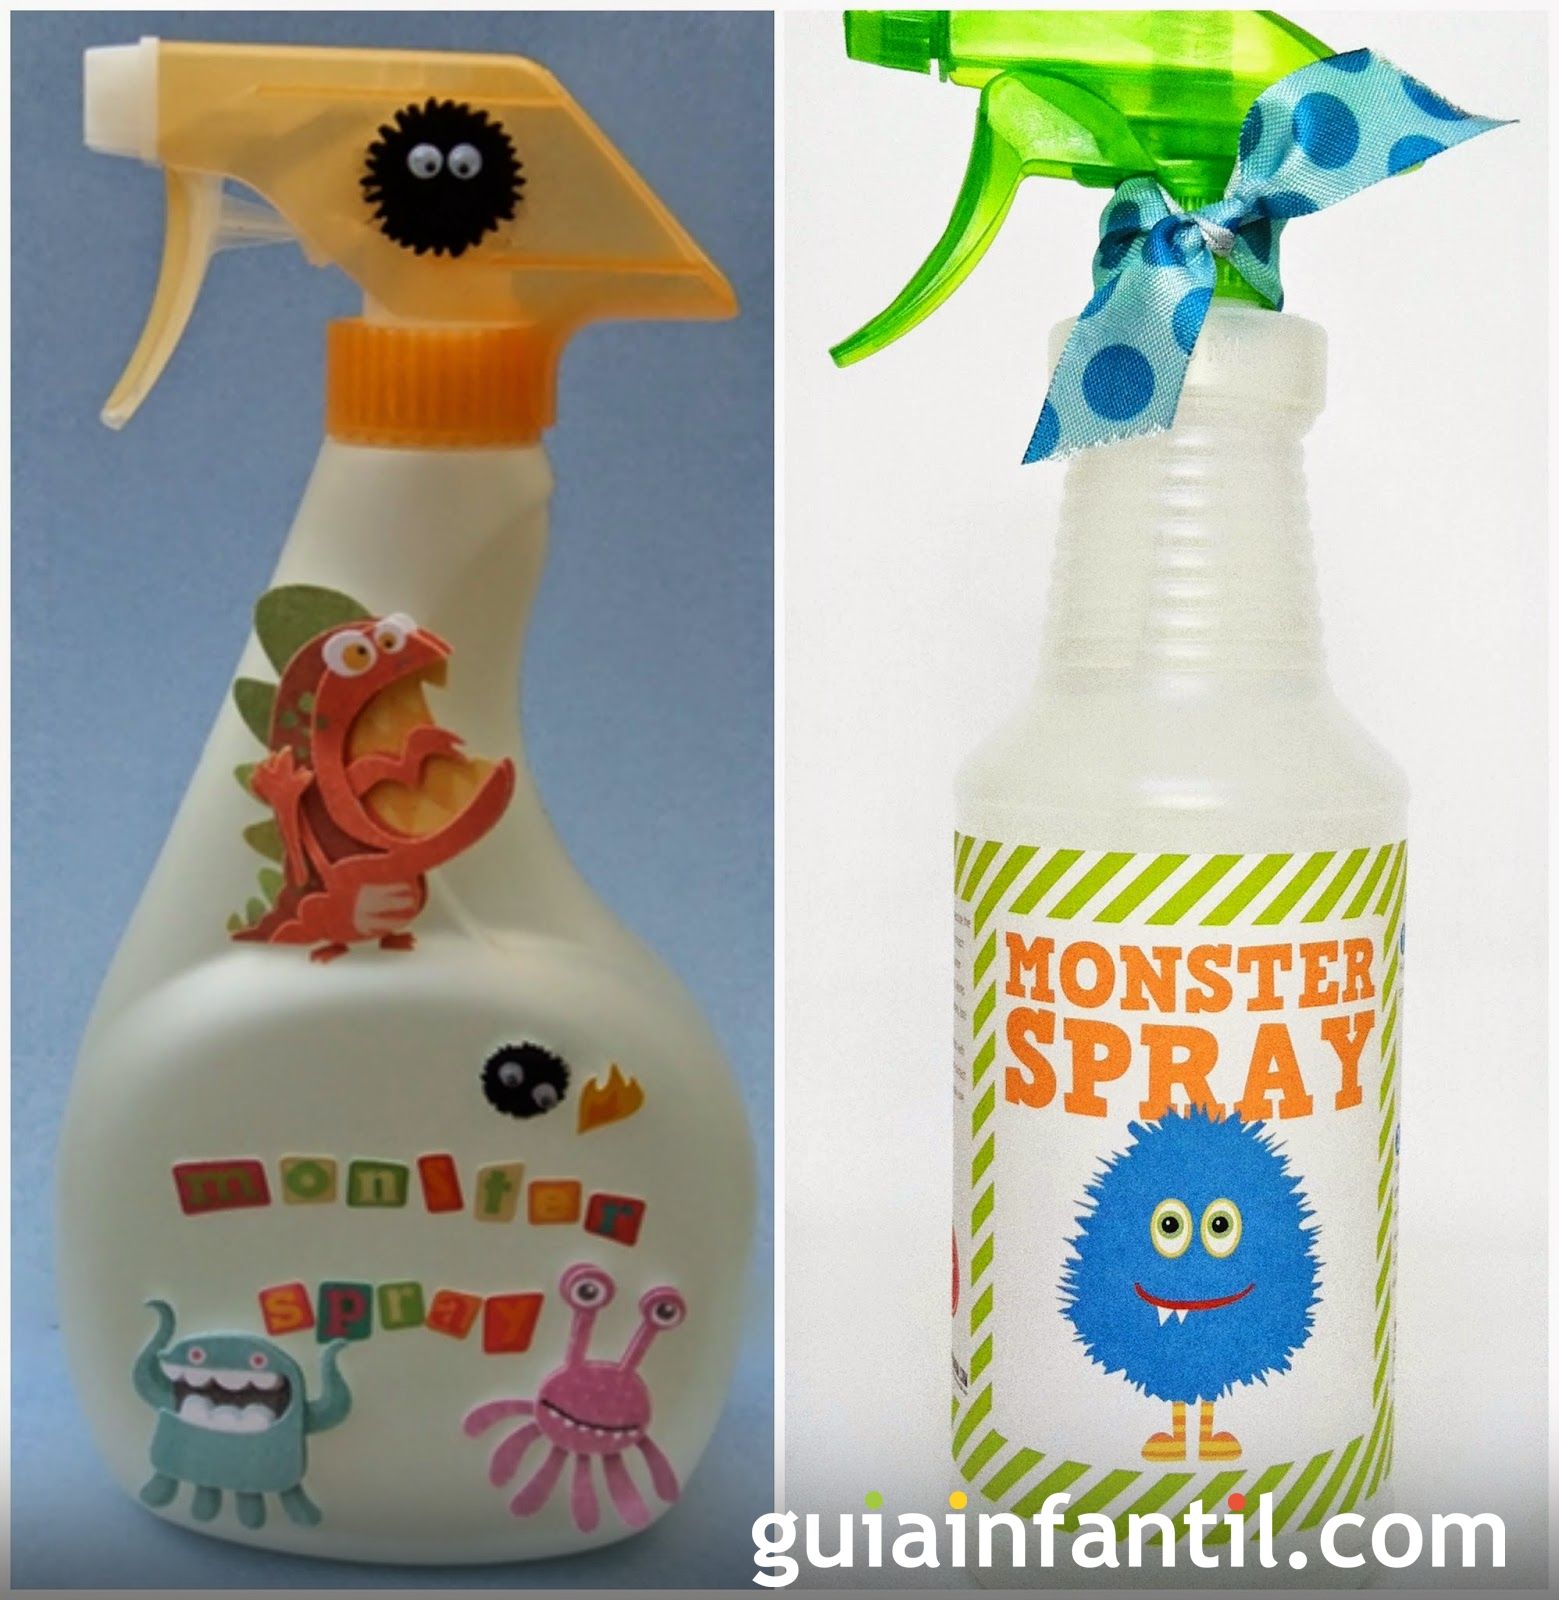 Spray anti monstruos para niños miedosos